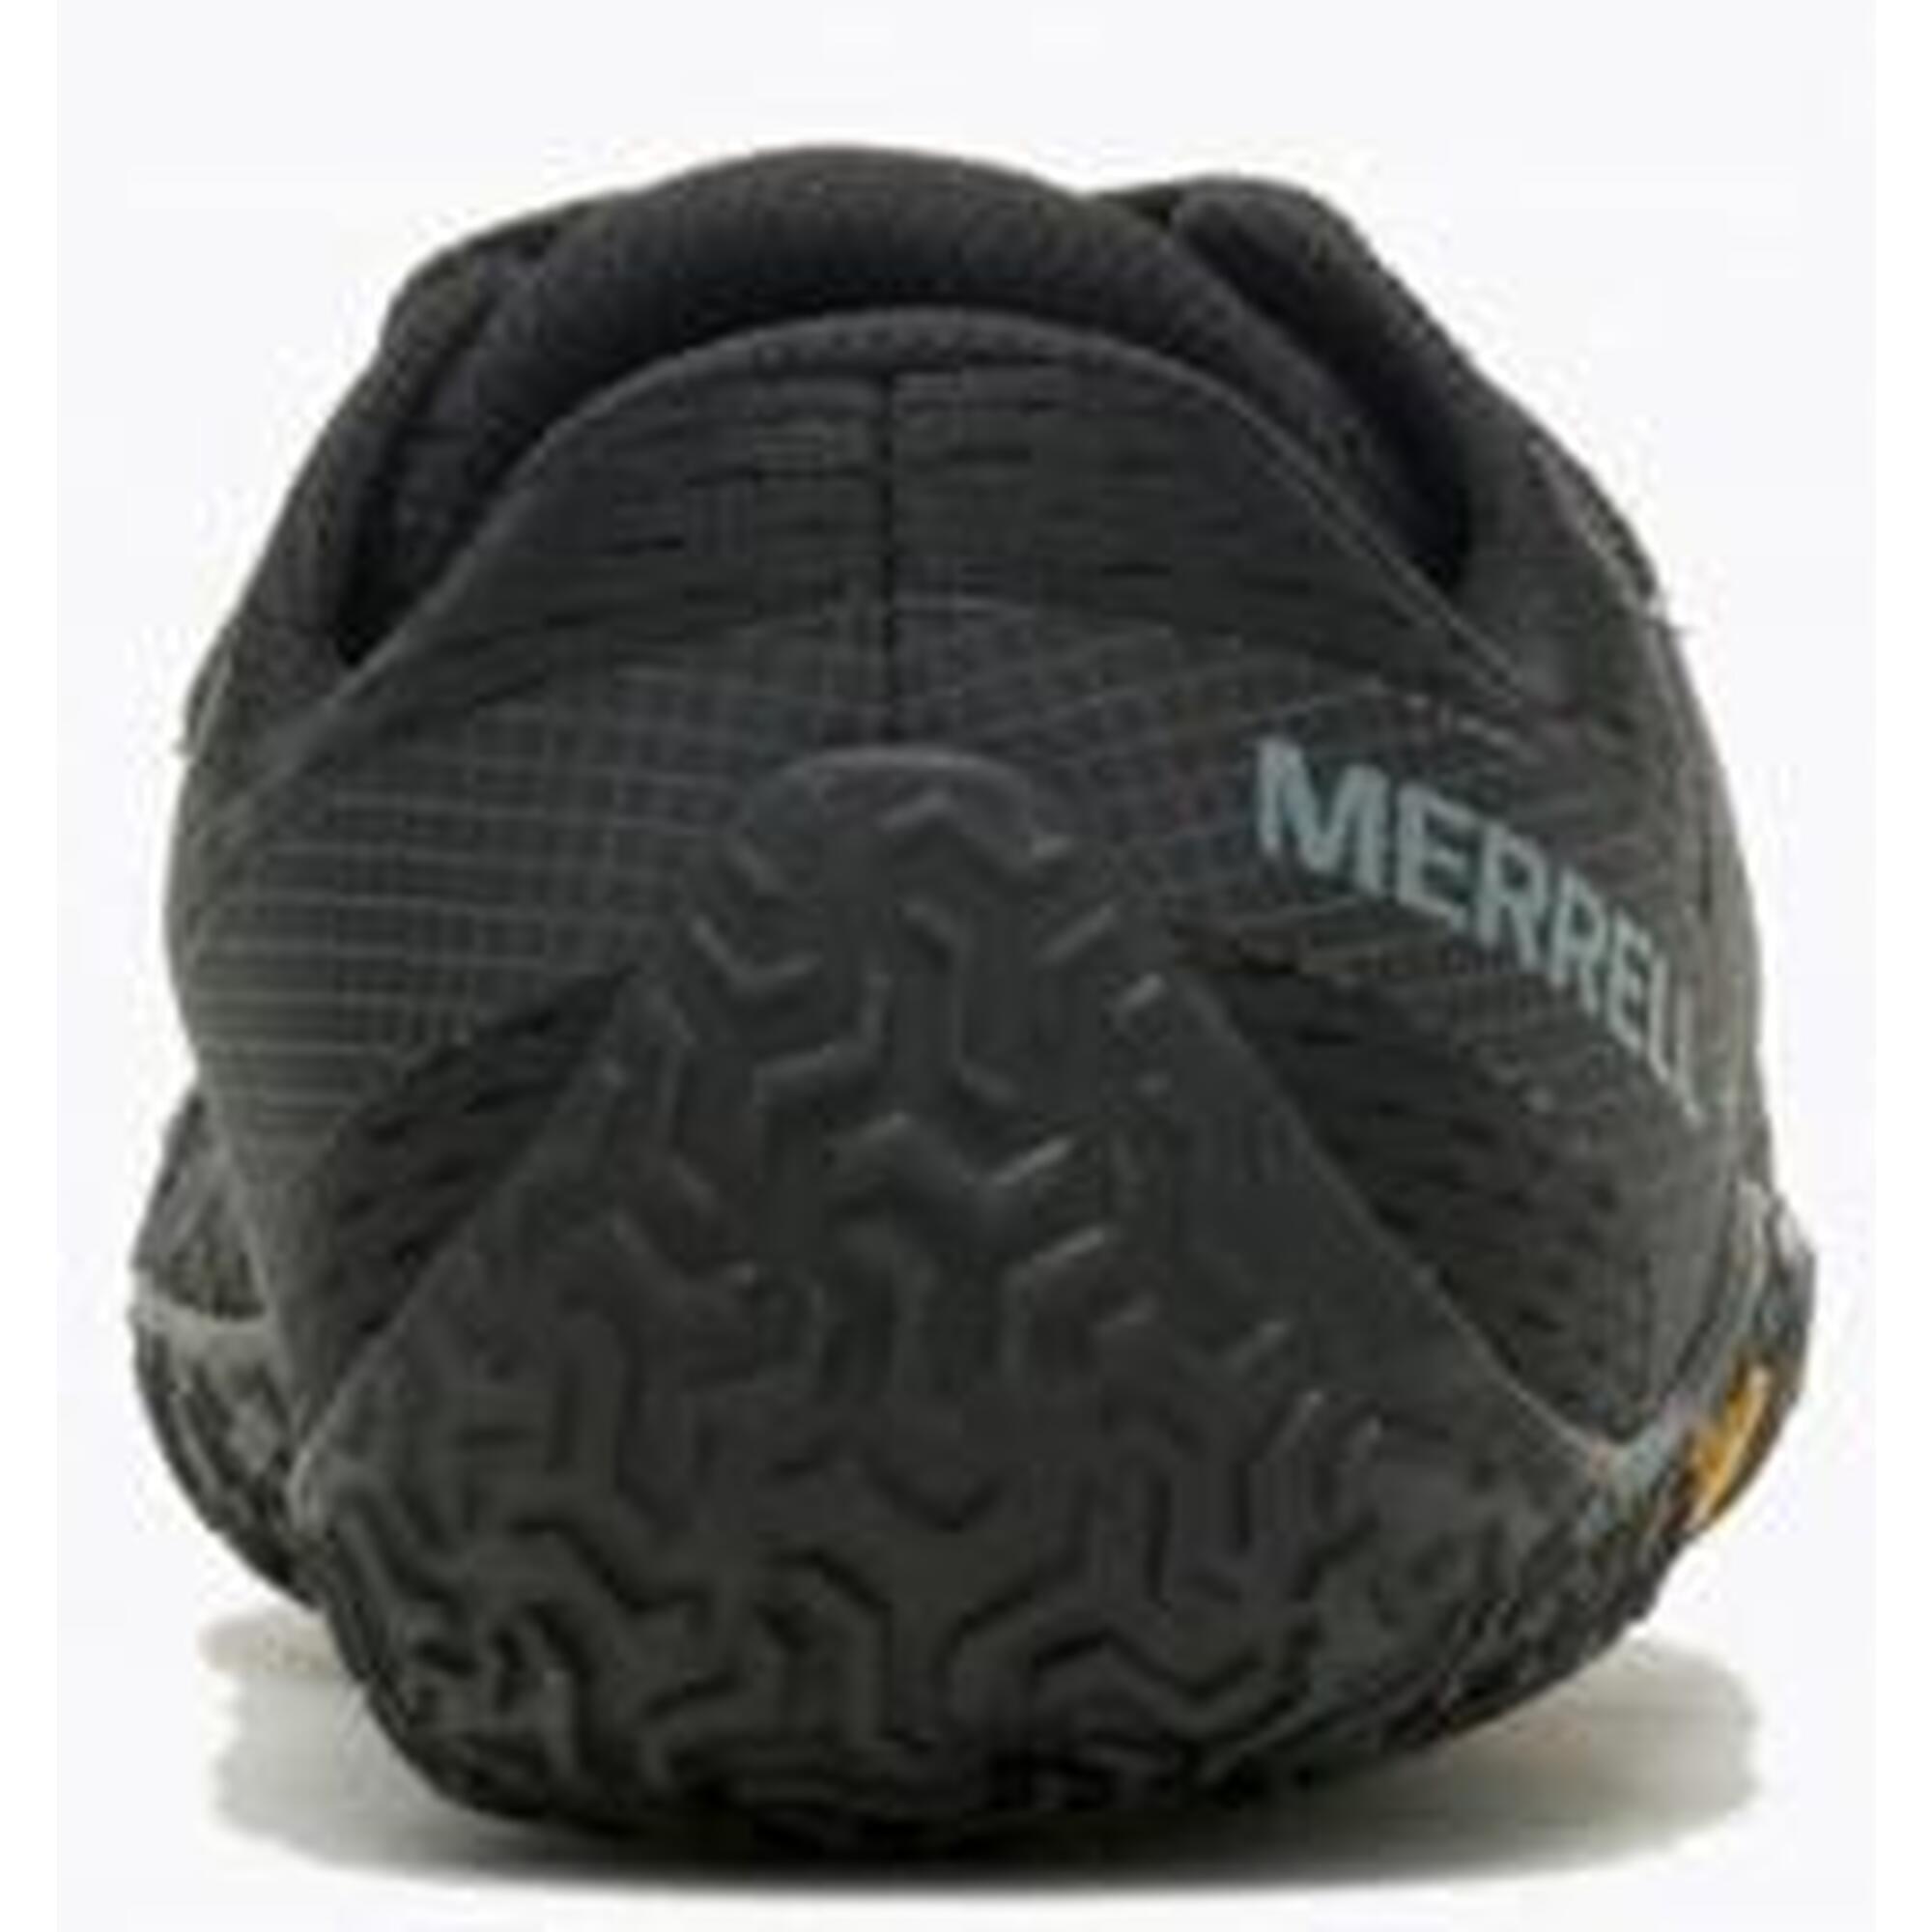 Chaussures de running pour femmes Merrell Vapor Glove 6